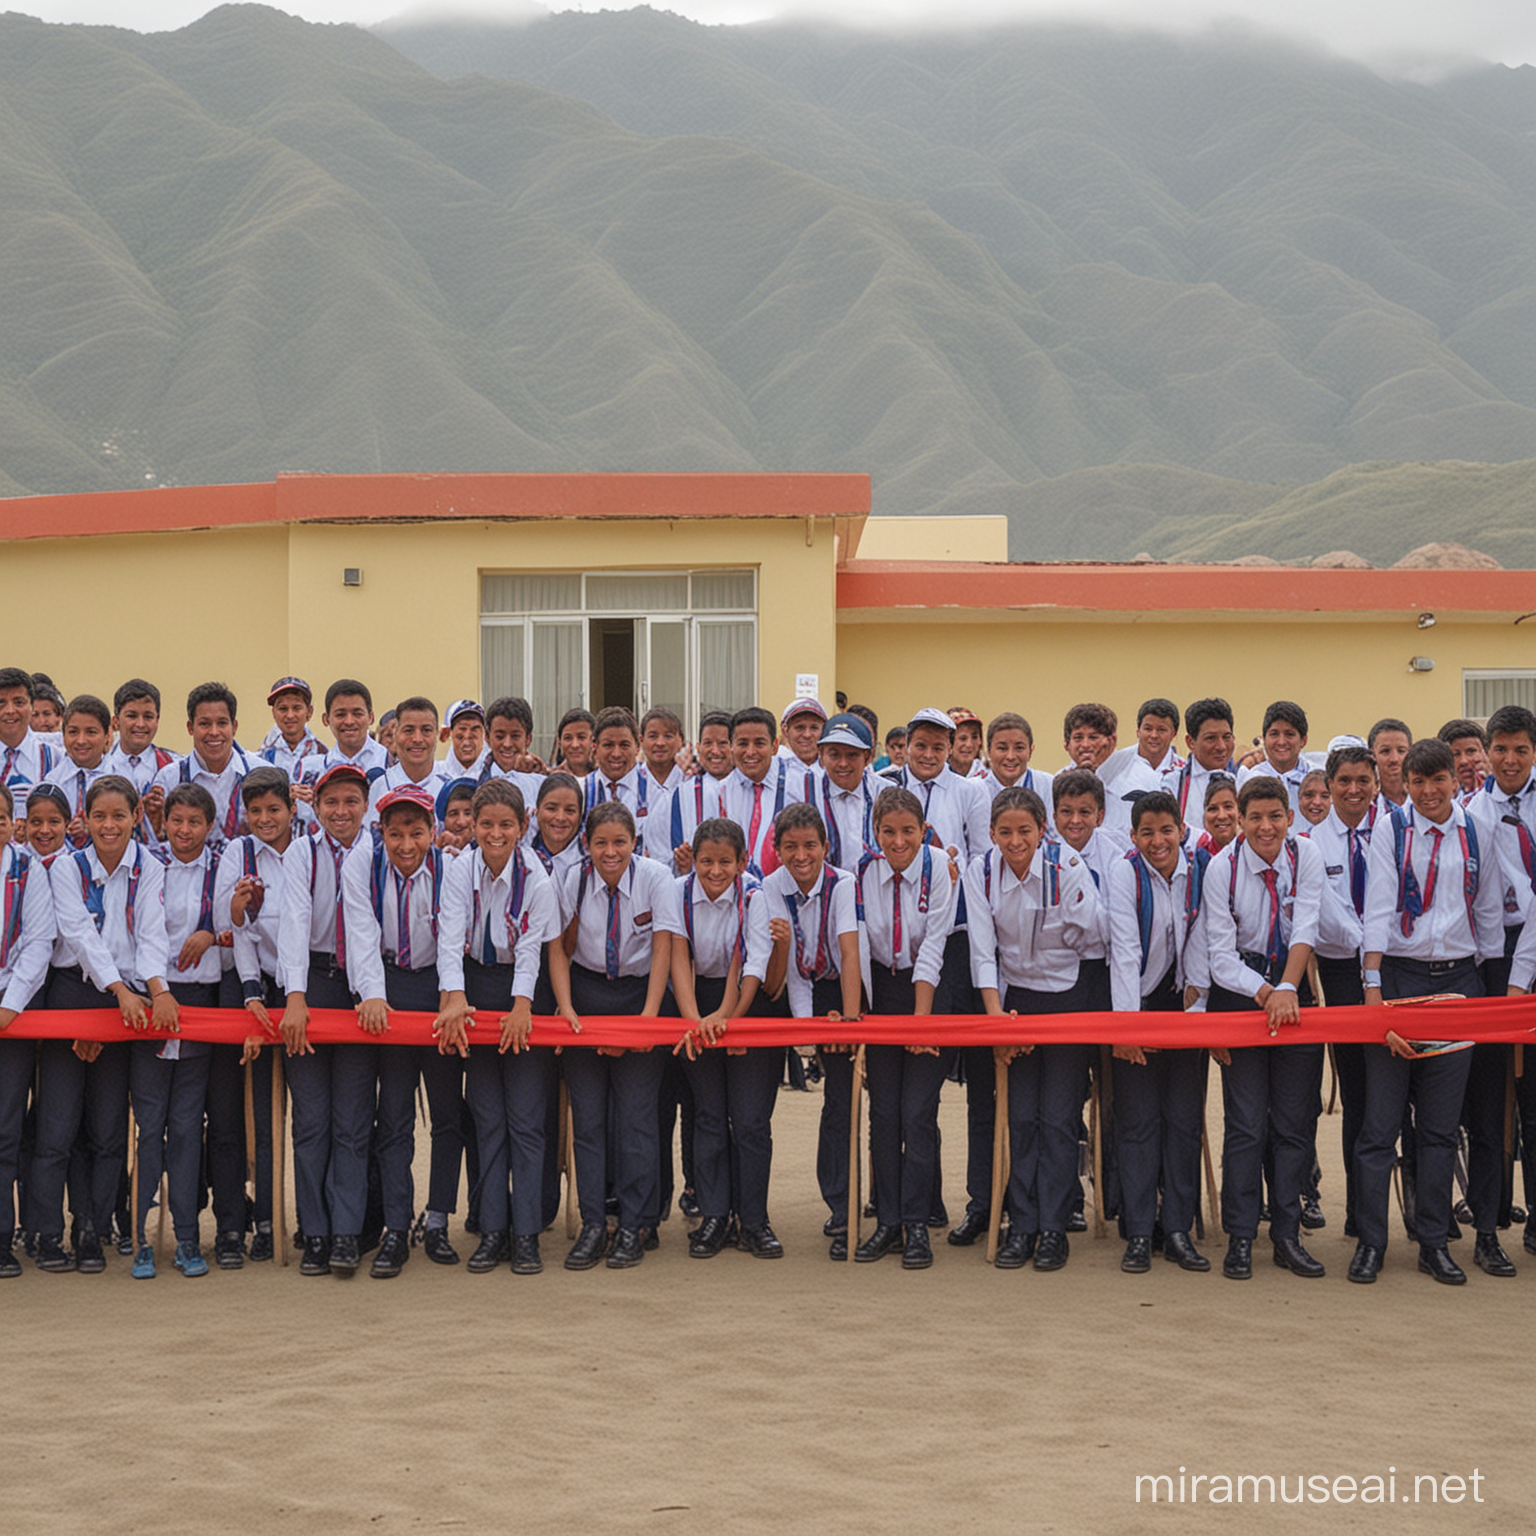 imagen de un colegio peruano recién inaugurado